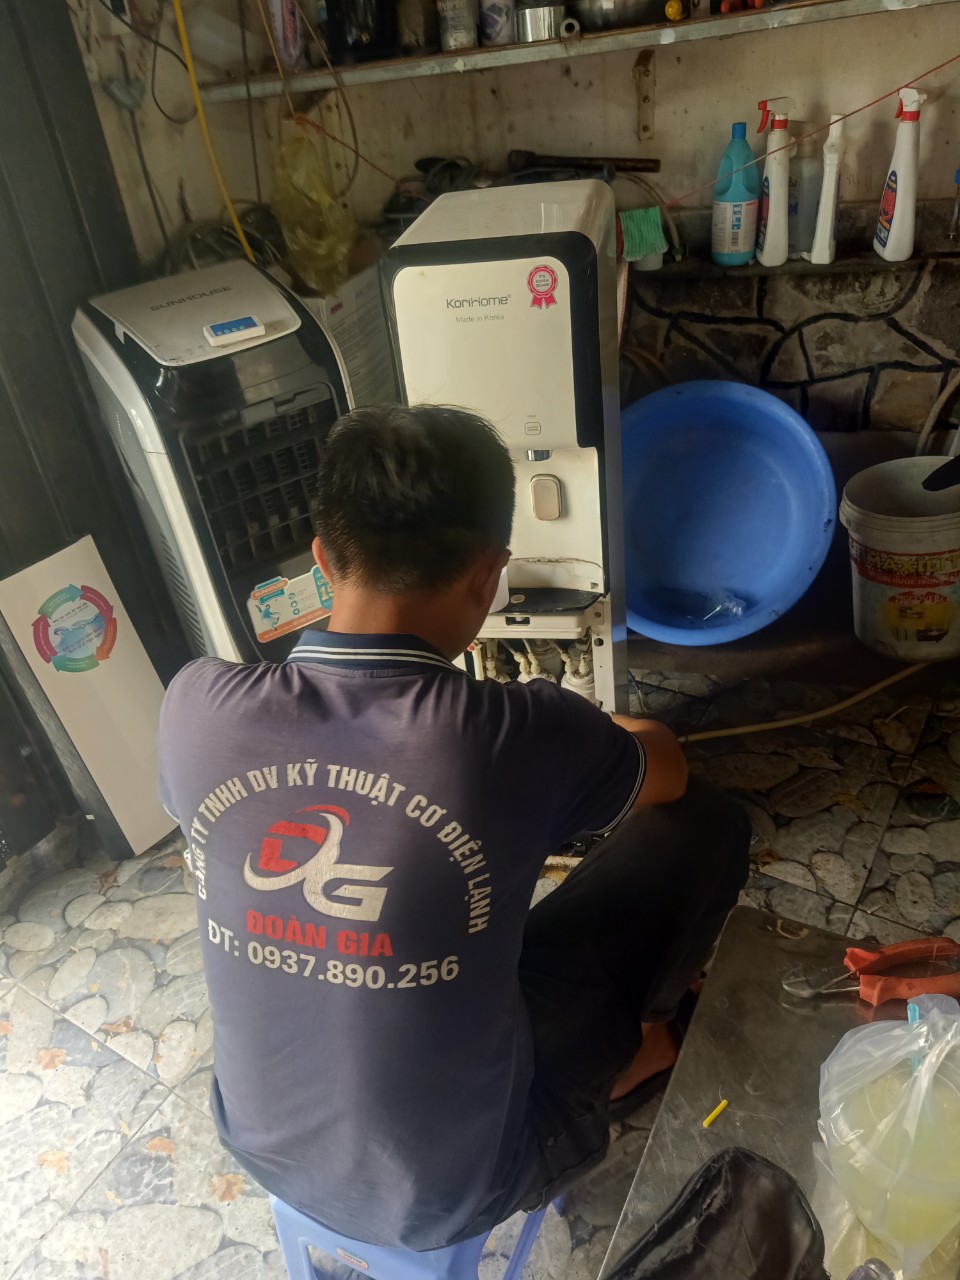 Sửa máy lọc nước Korihome